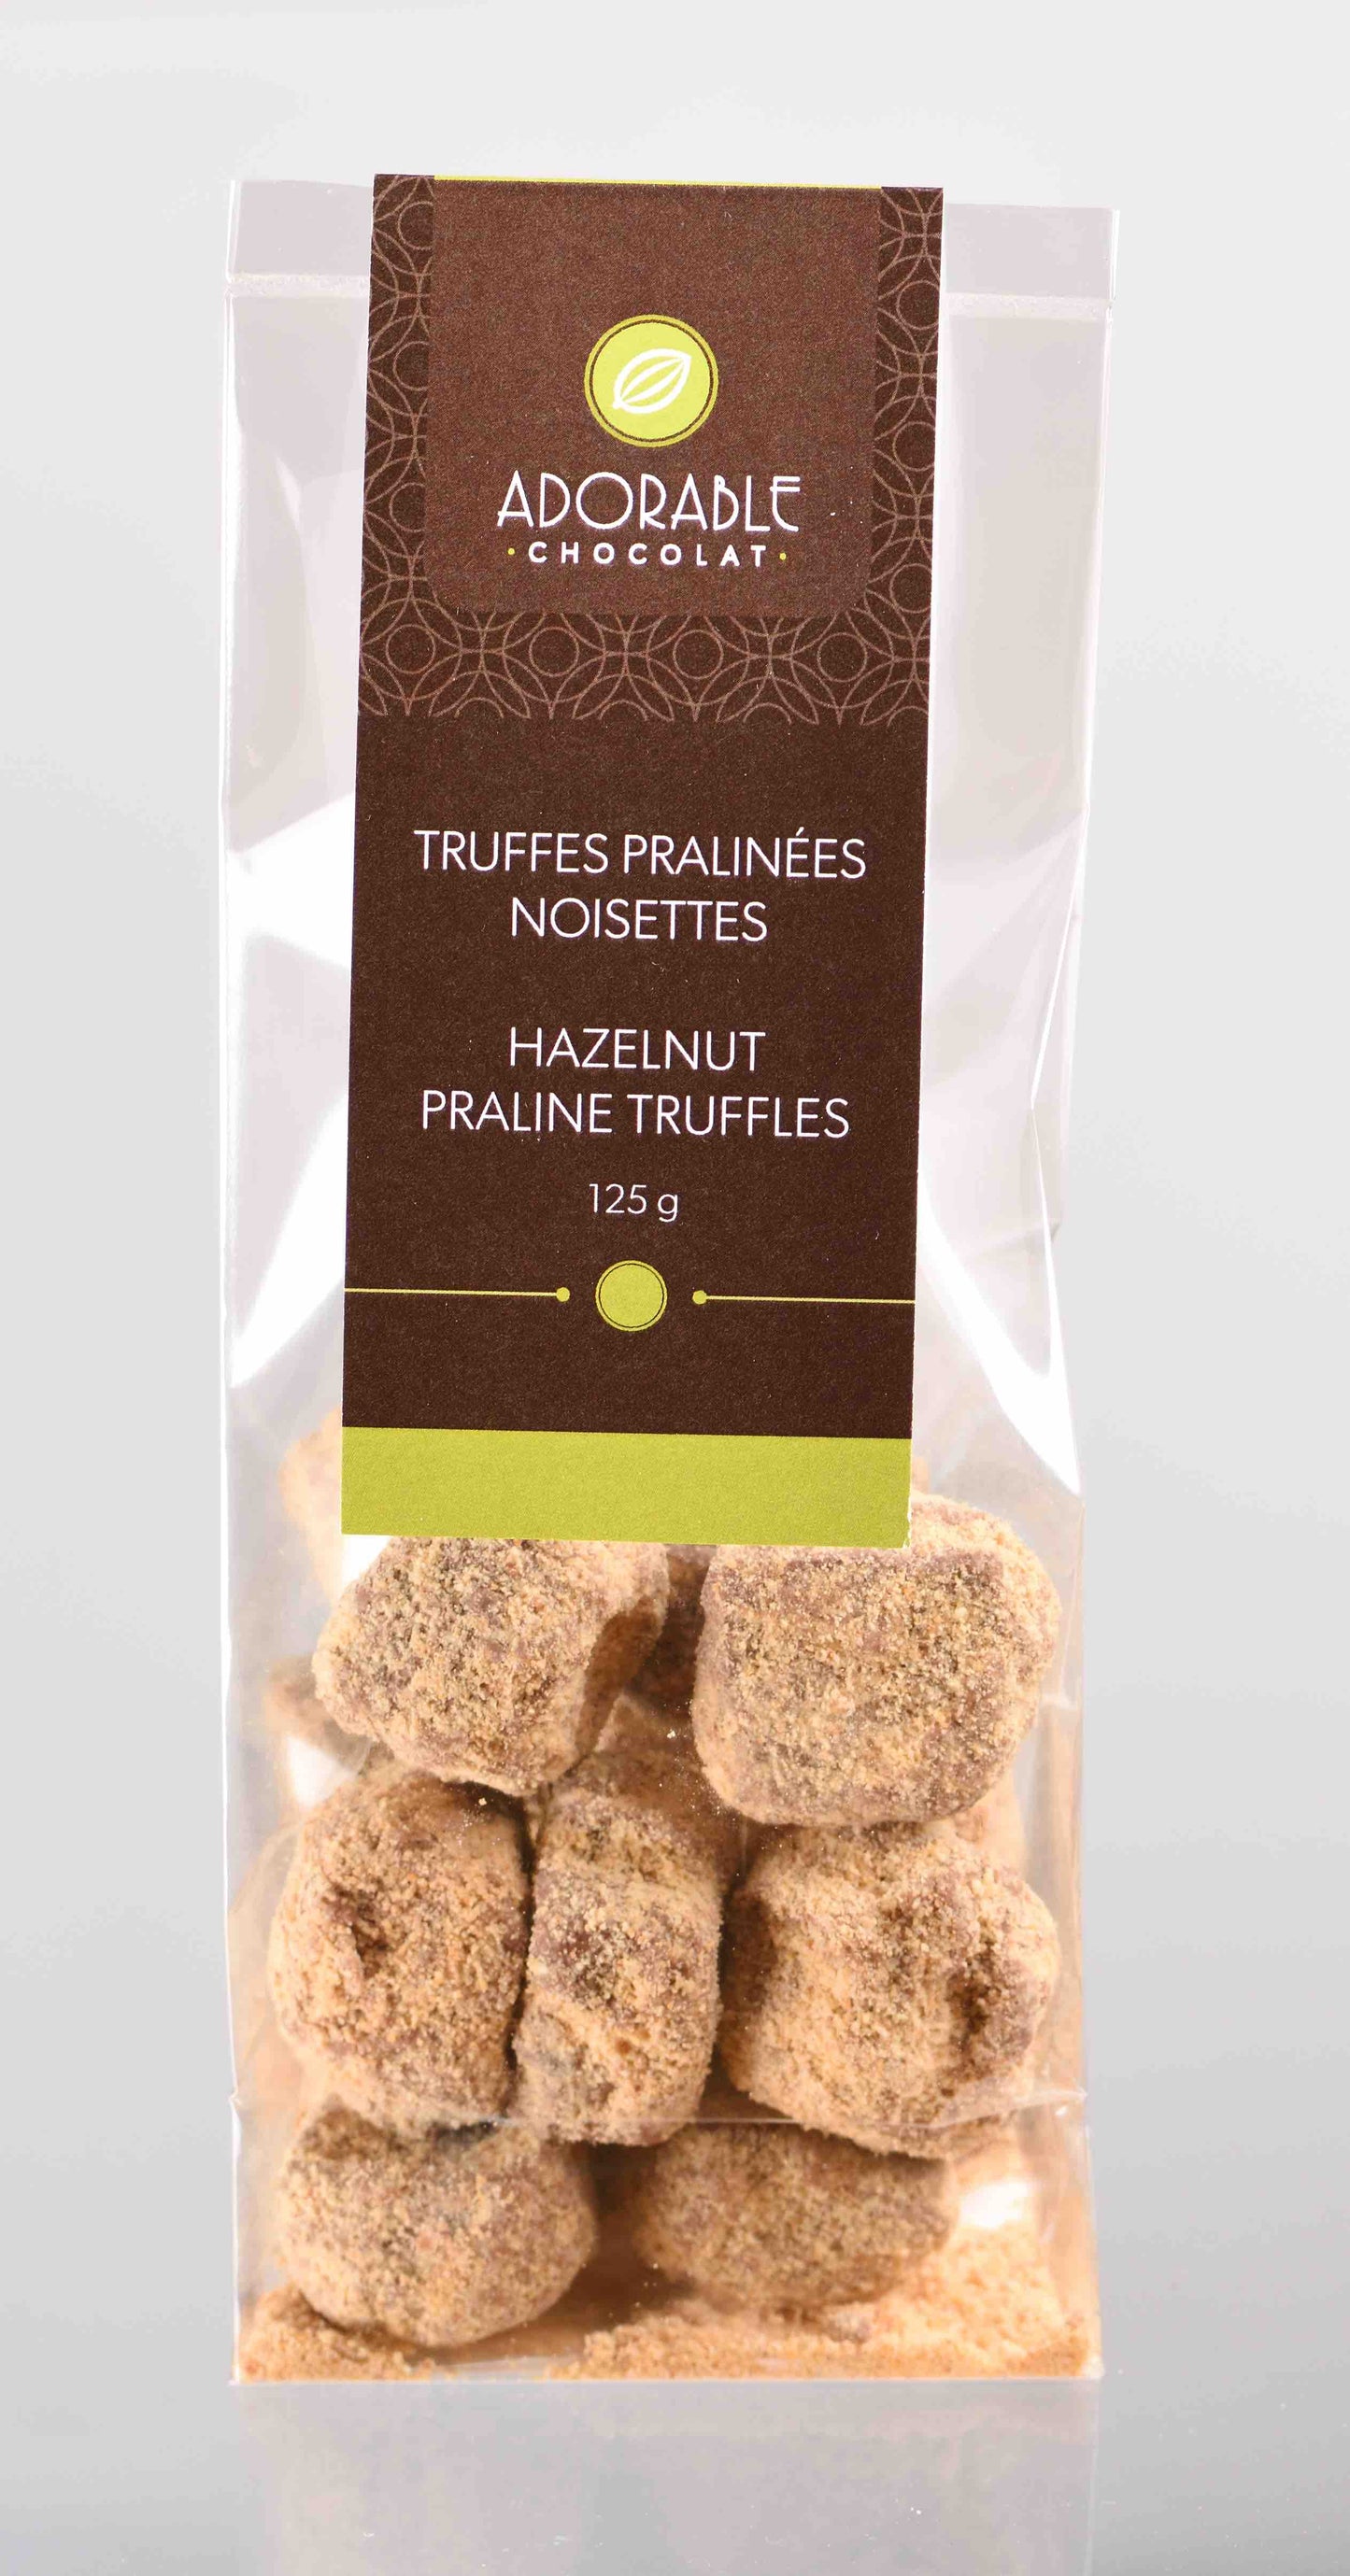 Truffles / Hazelnut Praline